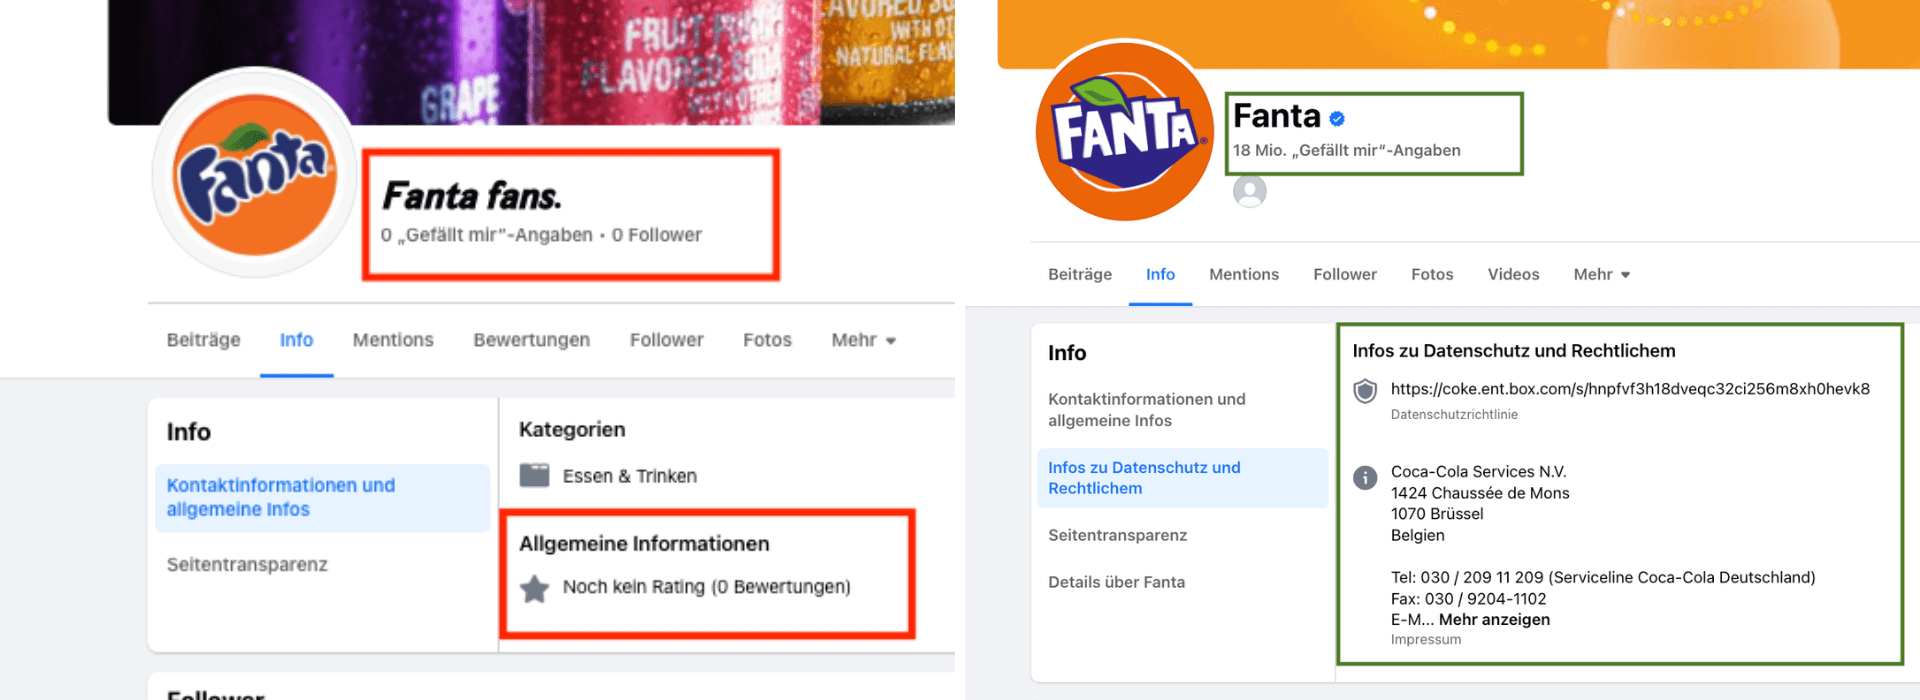 Links die gefälschte Fanta-Facebook-Seite, rechts die echte: Details wie ein Impressum, Follower-Anzahl oder der blaue Haken verraten schnell, ob ein Profil glaubwürdig ist. (Quelle: Facebook; Screenshots und Markierungen: CORRECTIV.Faktencheck)